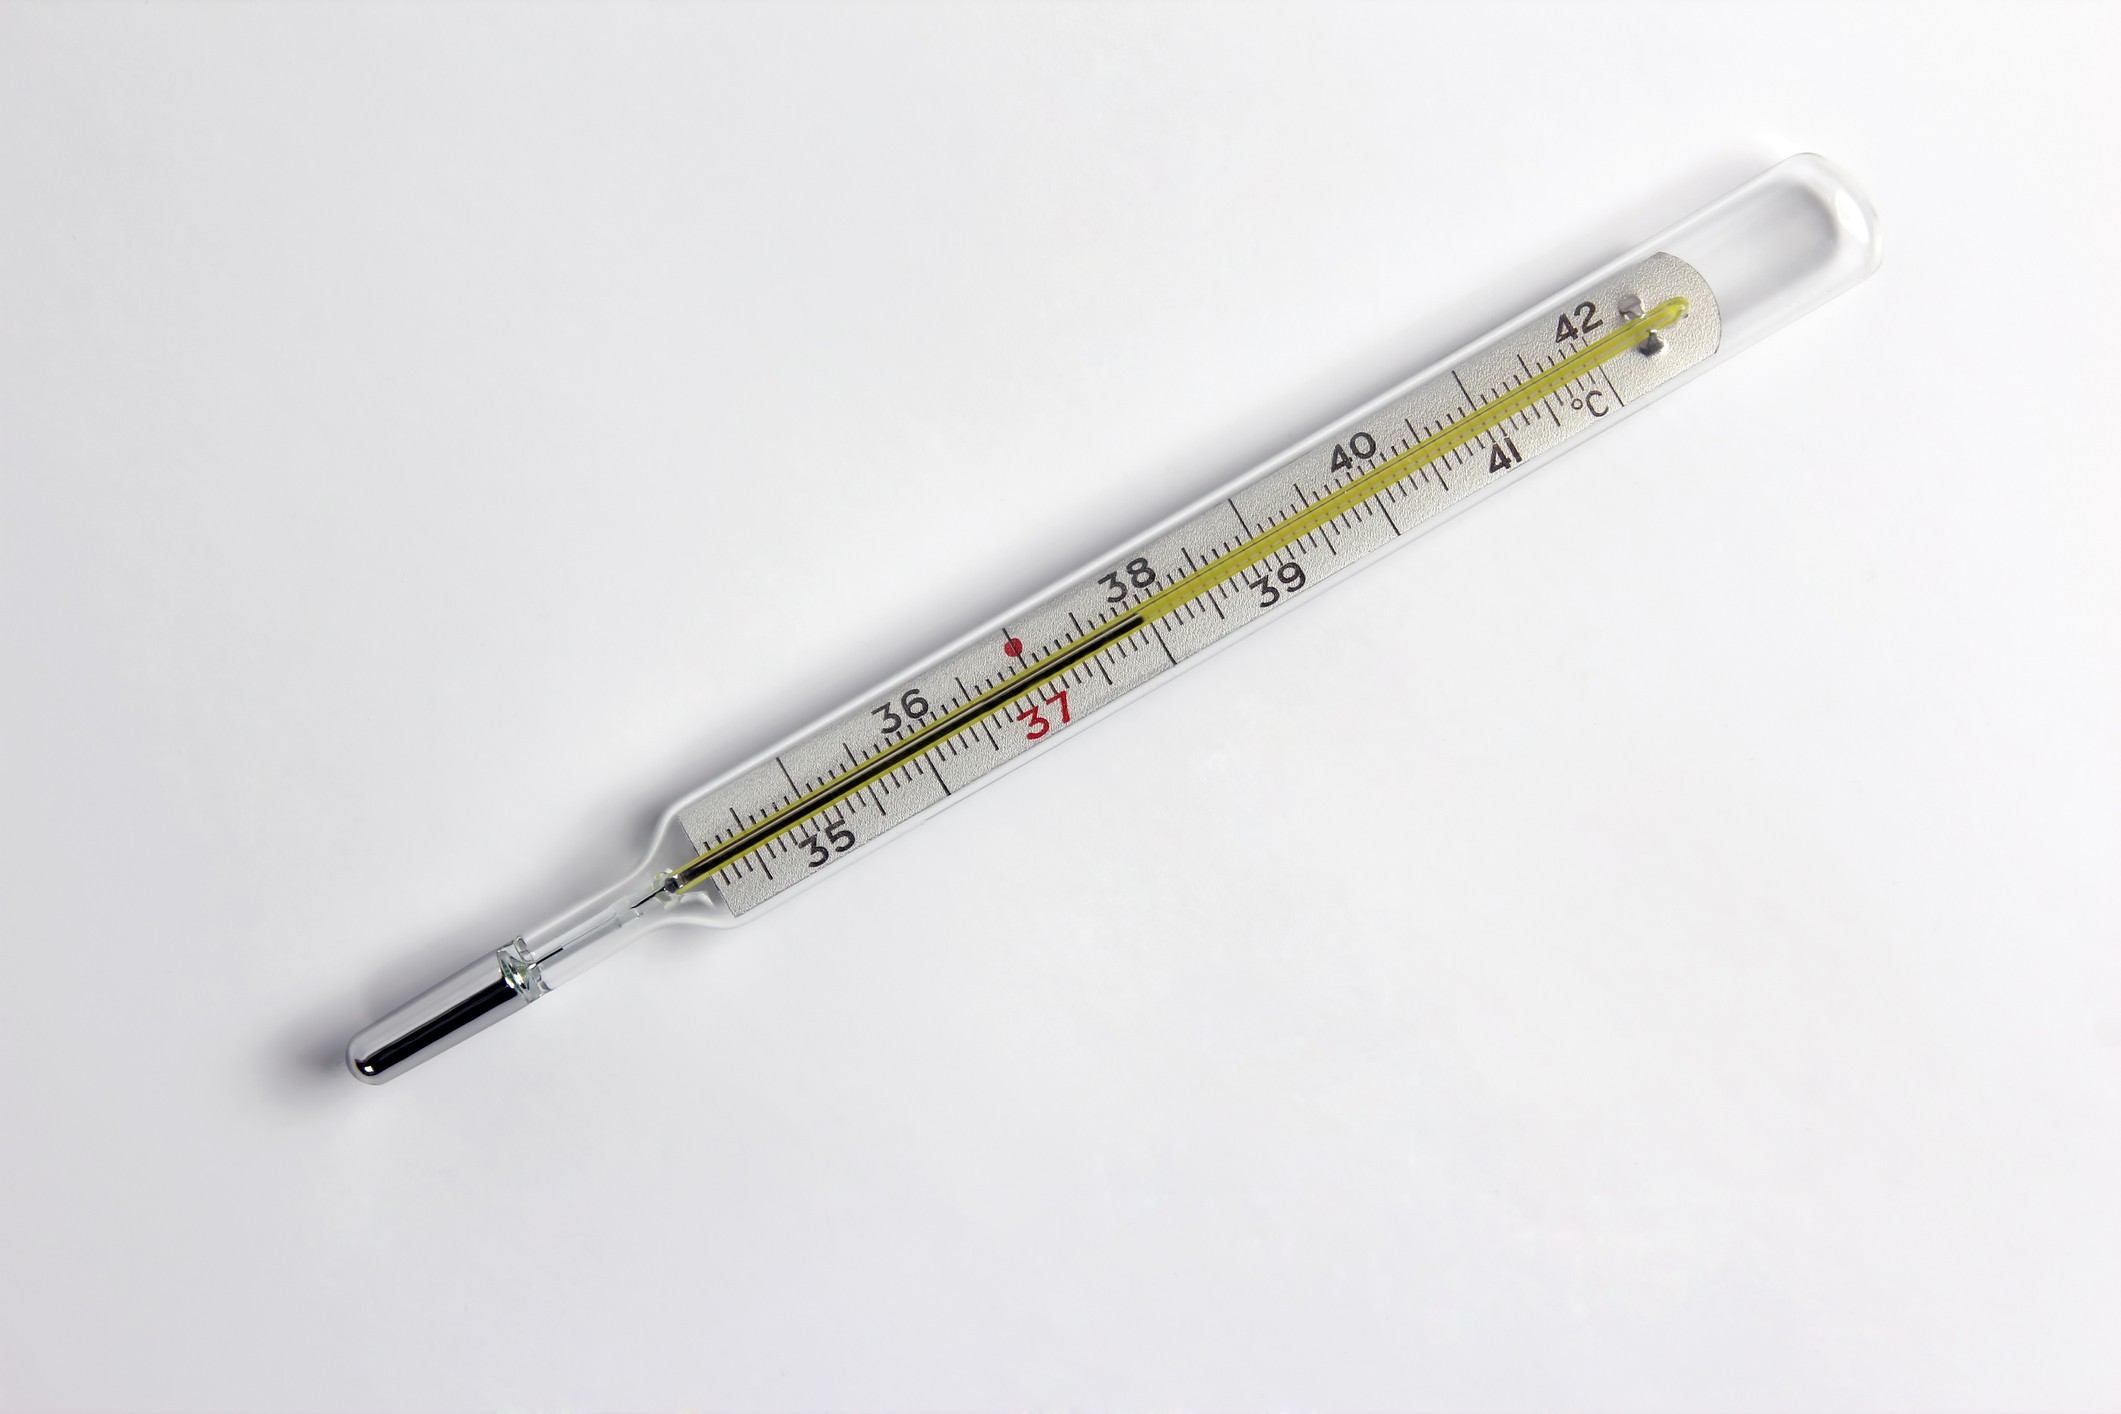 Termômetro com coluna de mercúrio (Foto: Thinkstock)